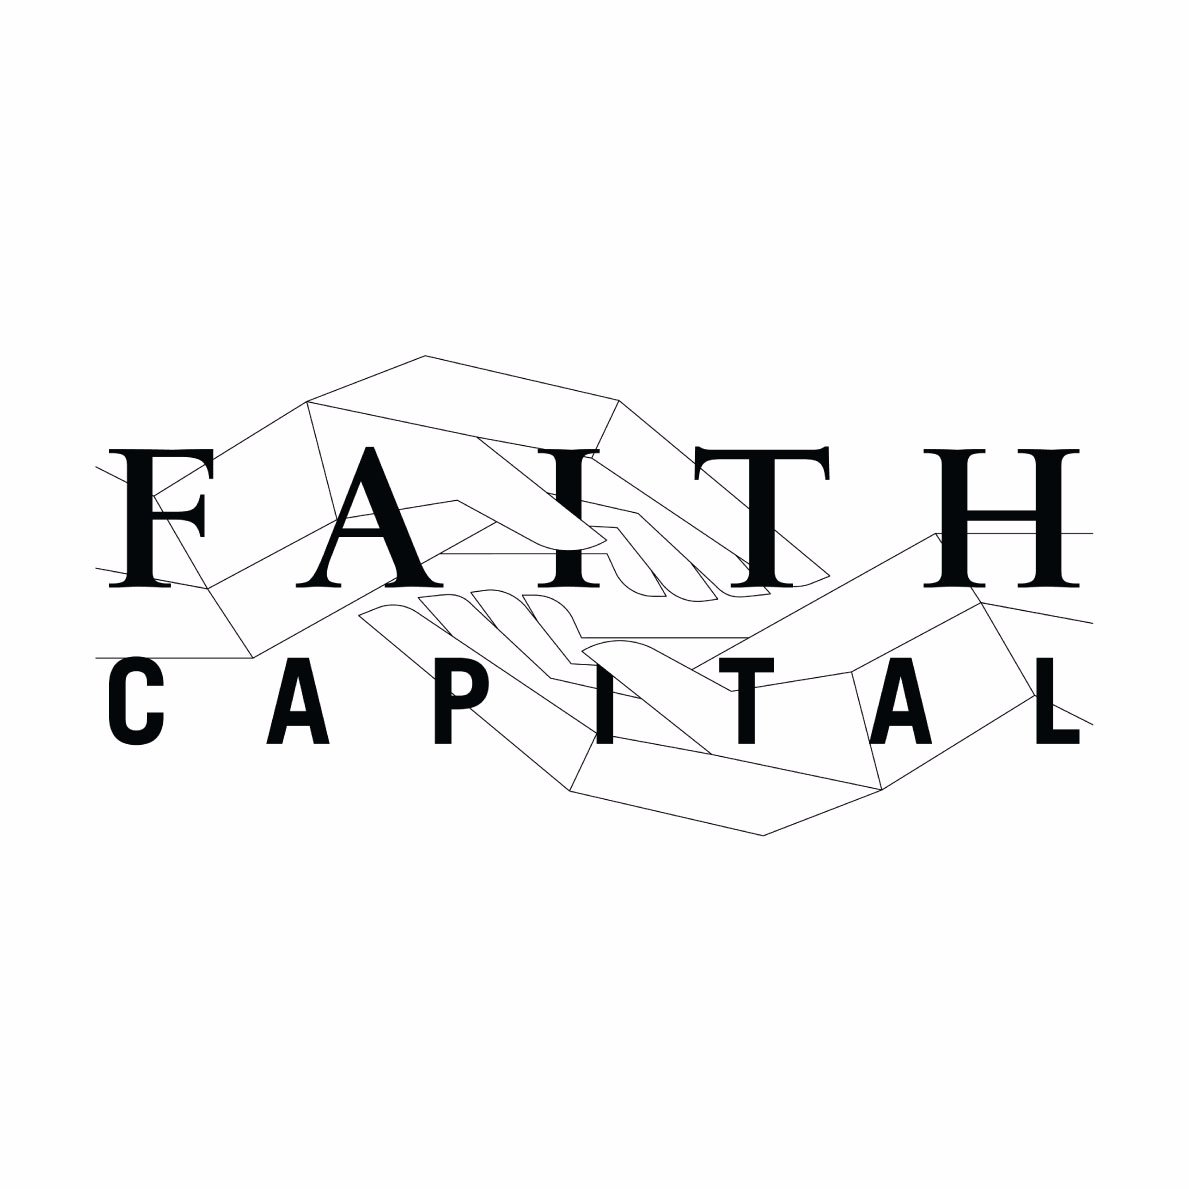 Faith Capital